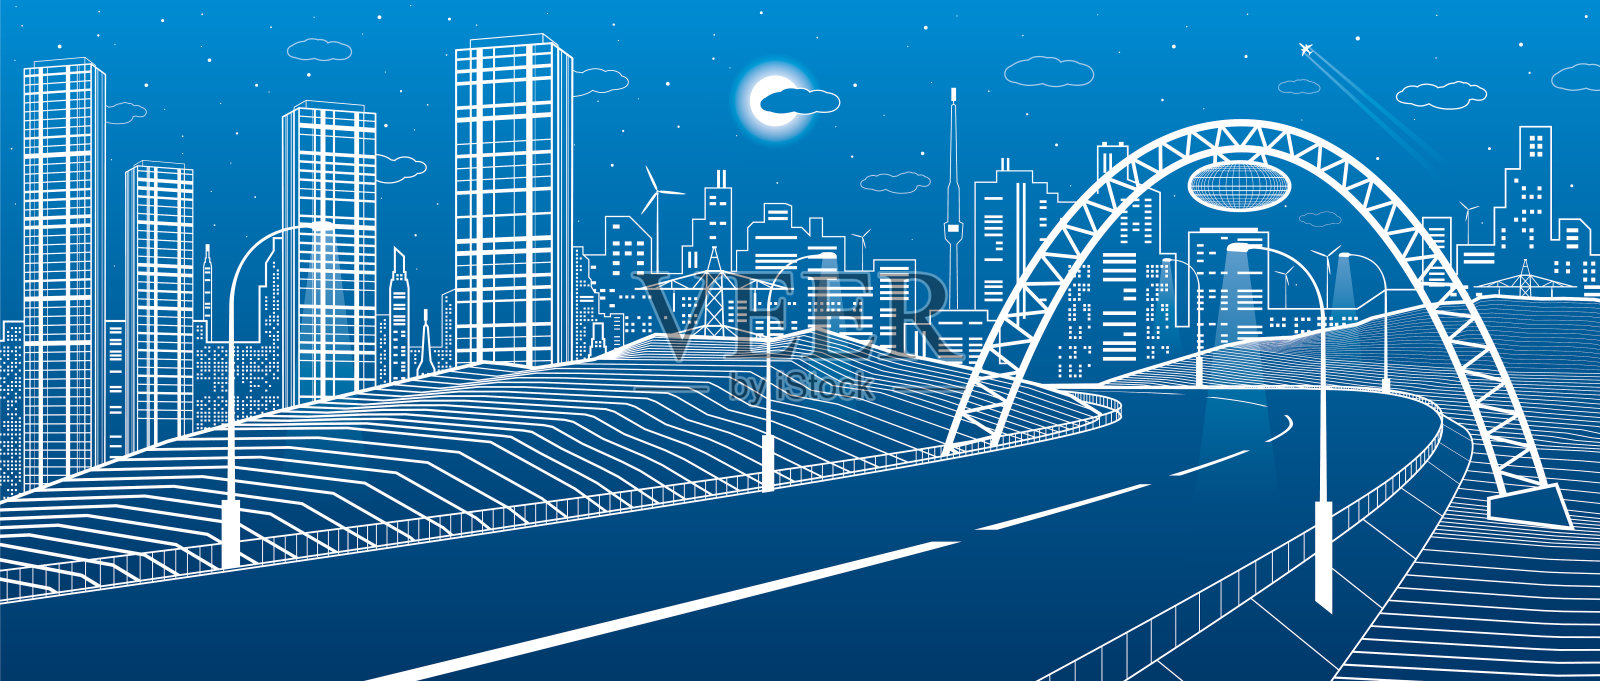 桥下高速公路。现代的夜城，霓虹之城。基础设施插图，城市场景。蓝色背景上的白线。矢量设计艺术插画图片素材